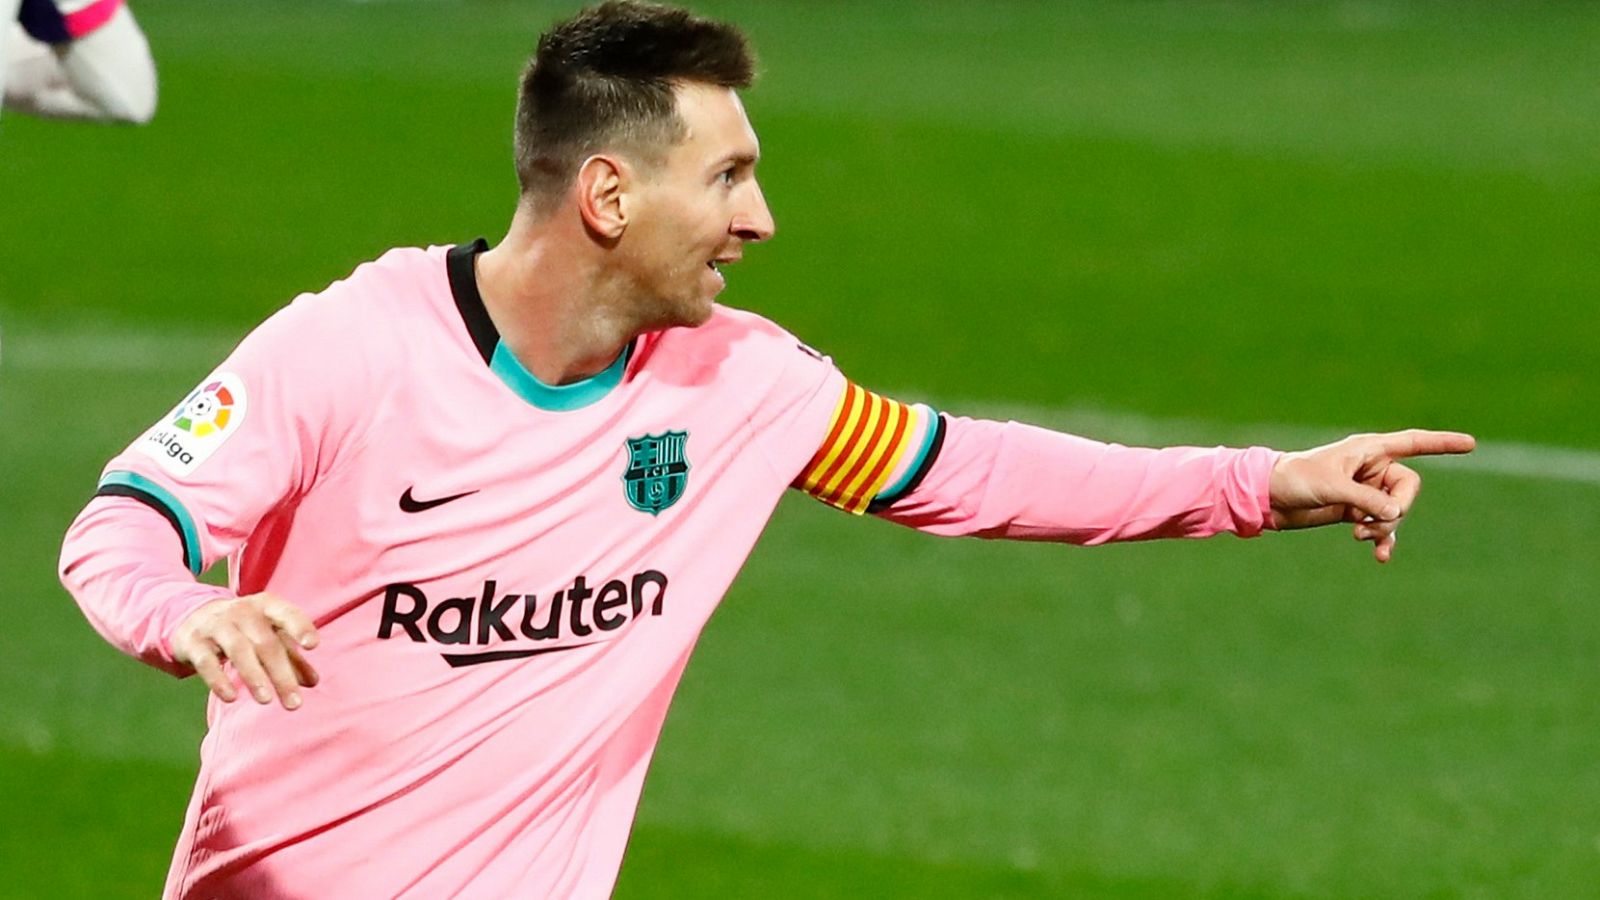 Leo Messi supera a Pelé como jugador con más goles en un mismo equipo.